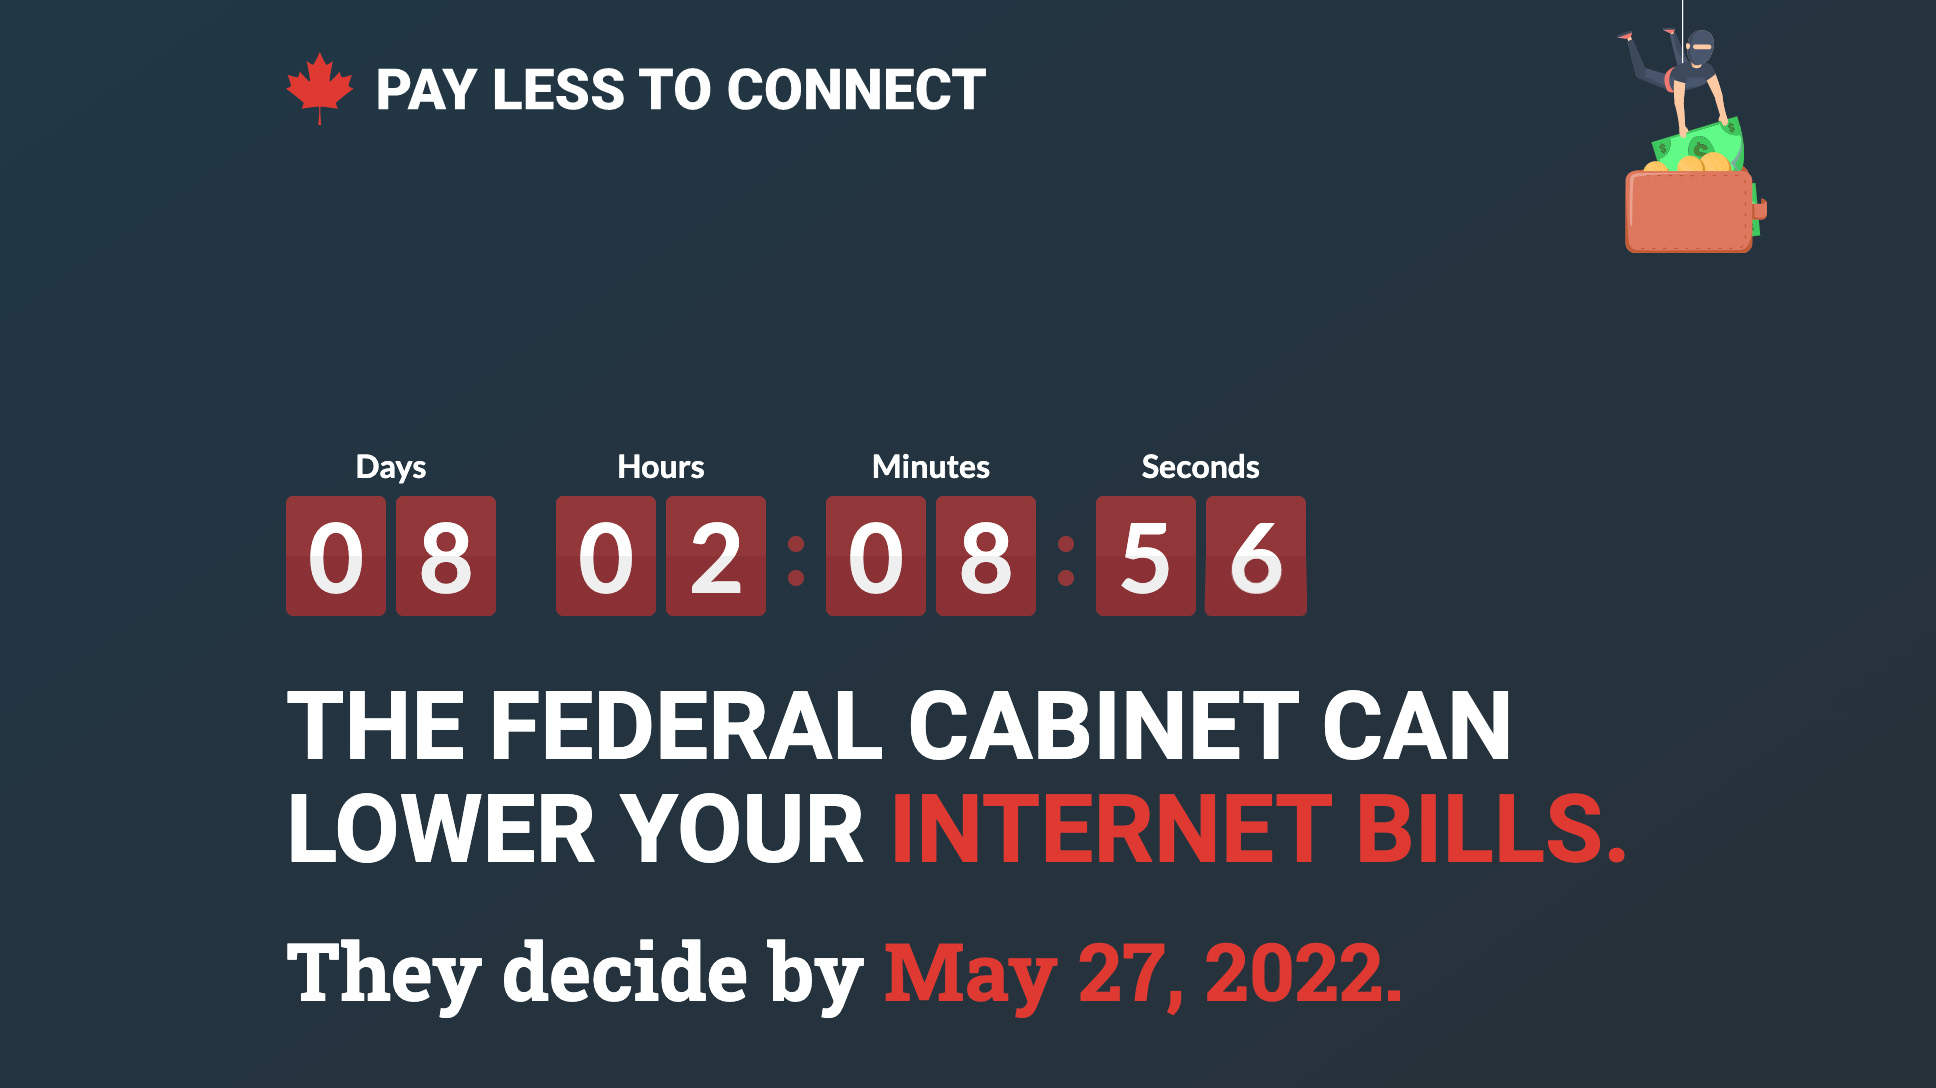 La nueva campaña de TekSavvy recuerda al gobierno federal la fecha límite inminente para bajar los precios de Internet